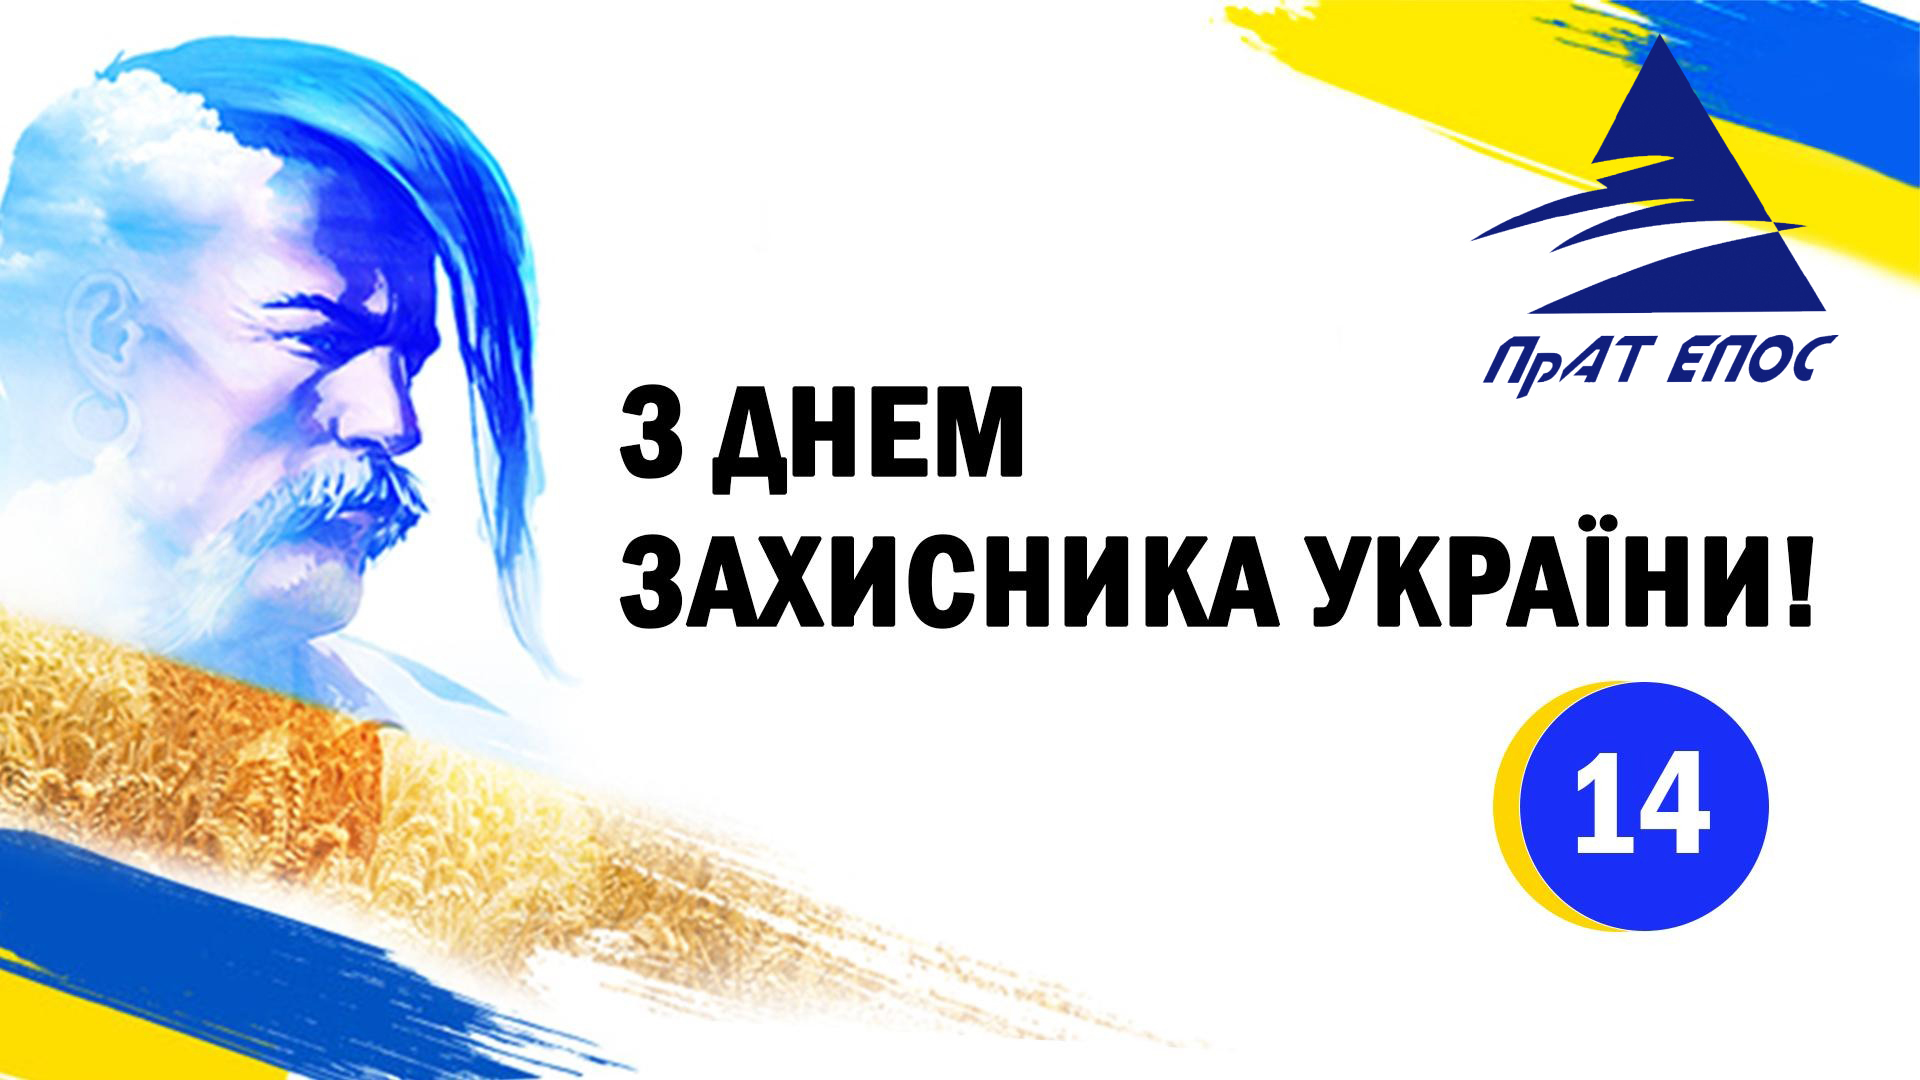 Коллектив ЧАО «Эпос» поздравляет Вас с замечательным праздником - Днем защитника Украины.